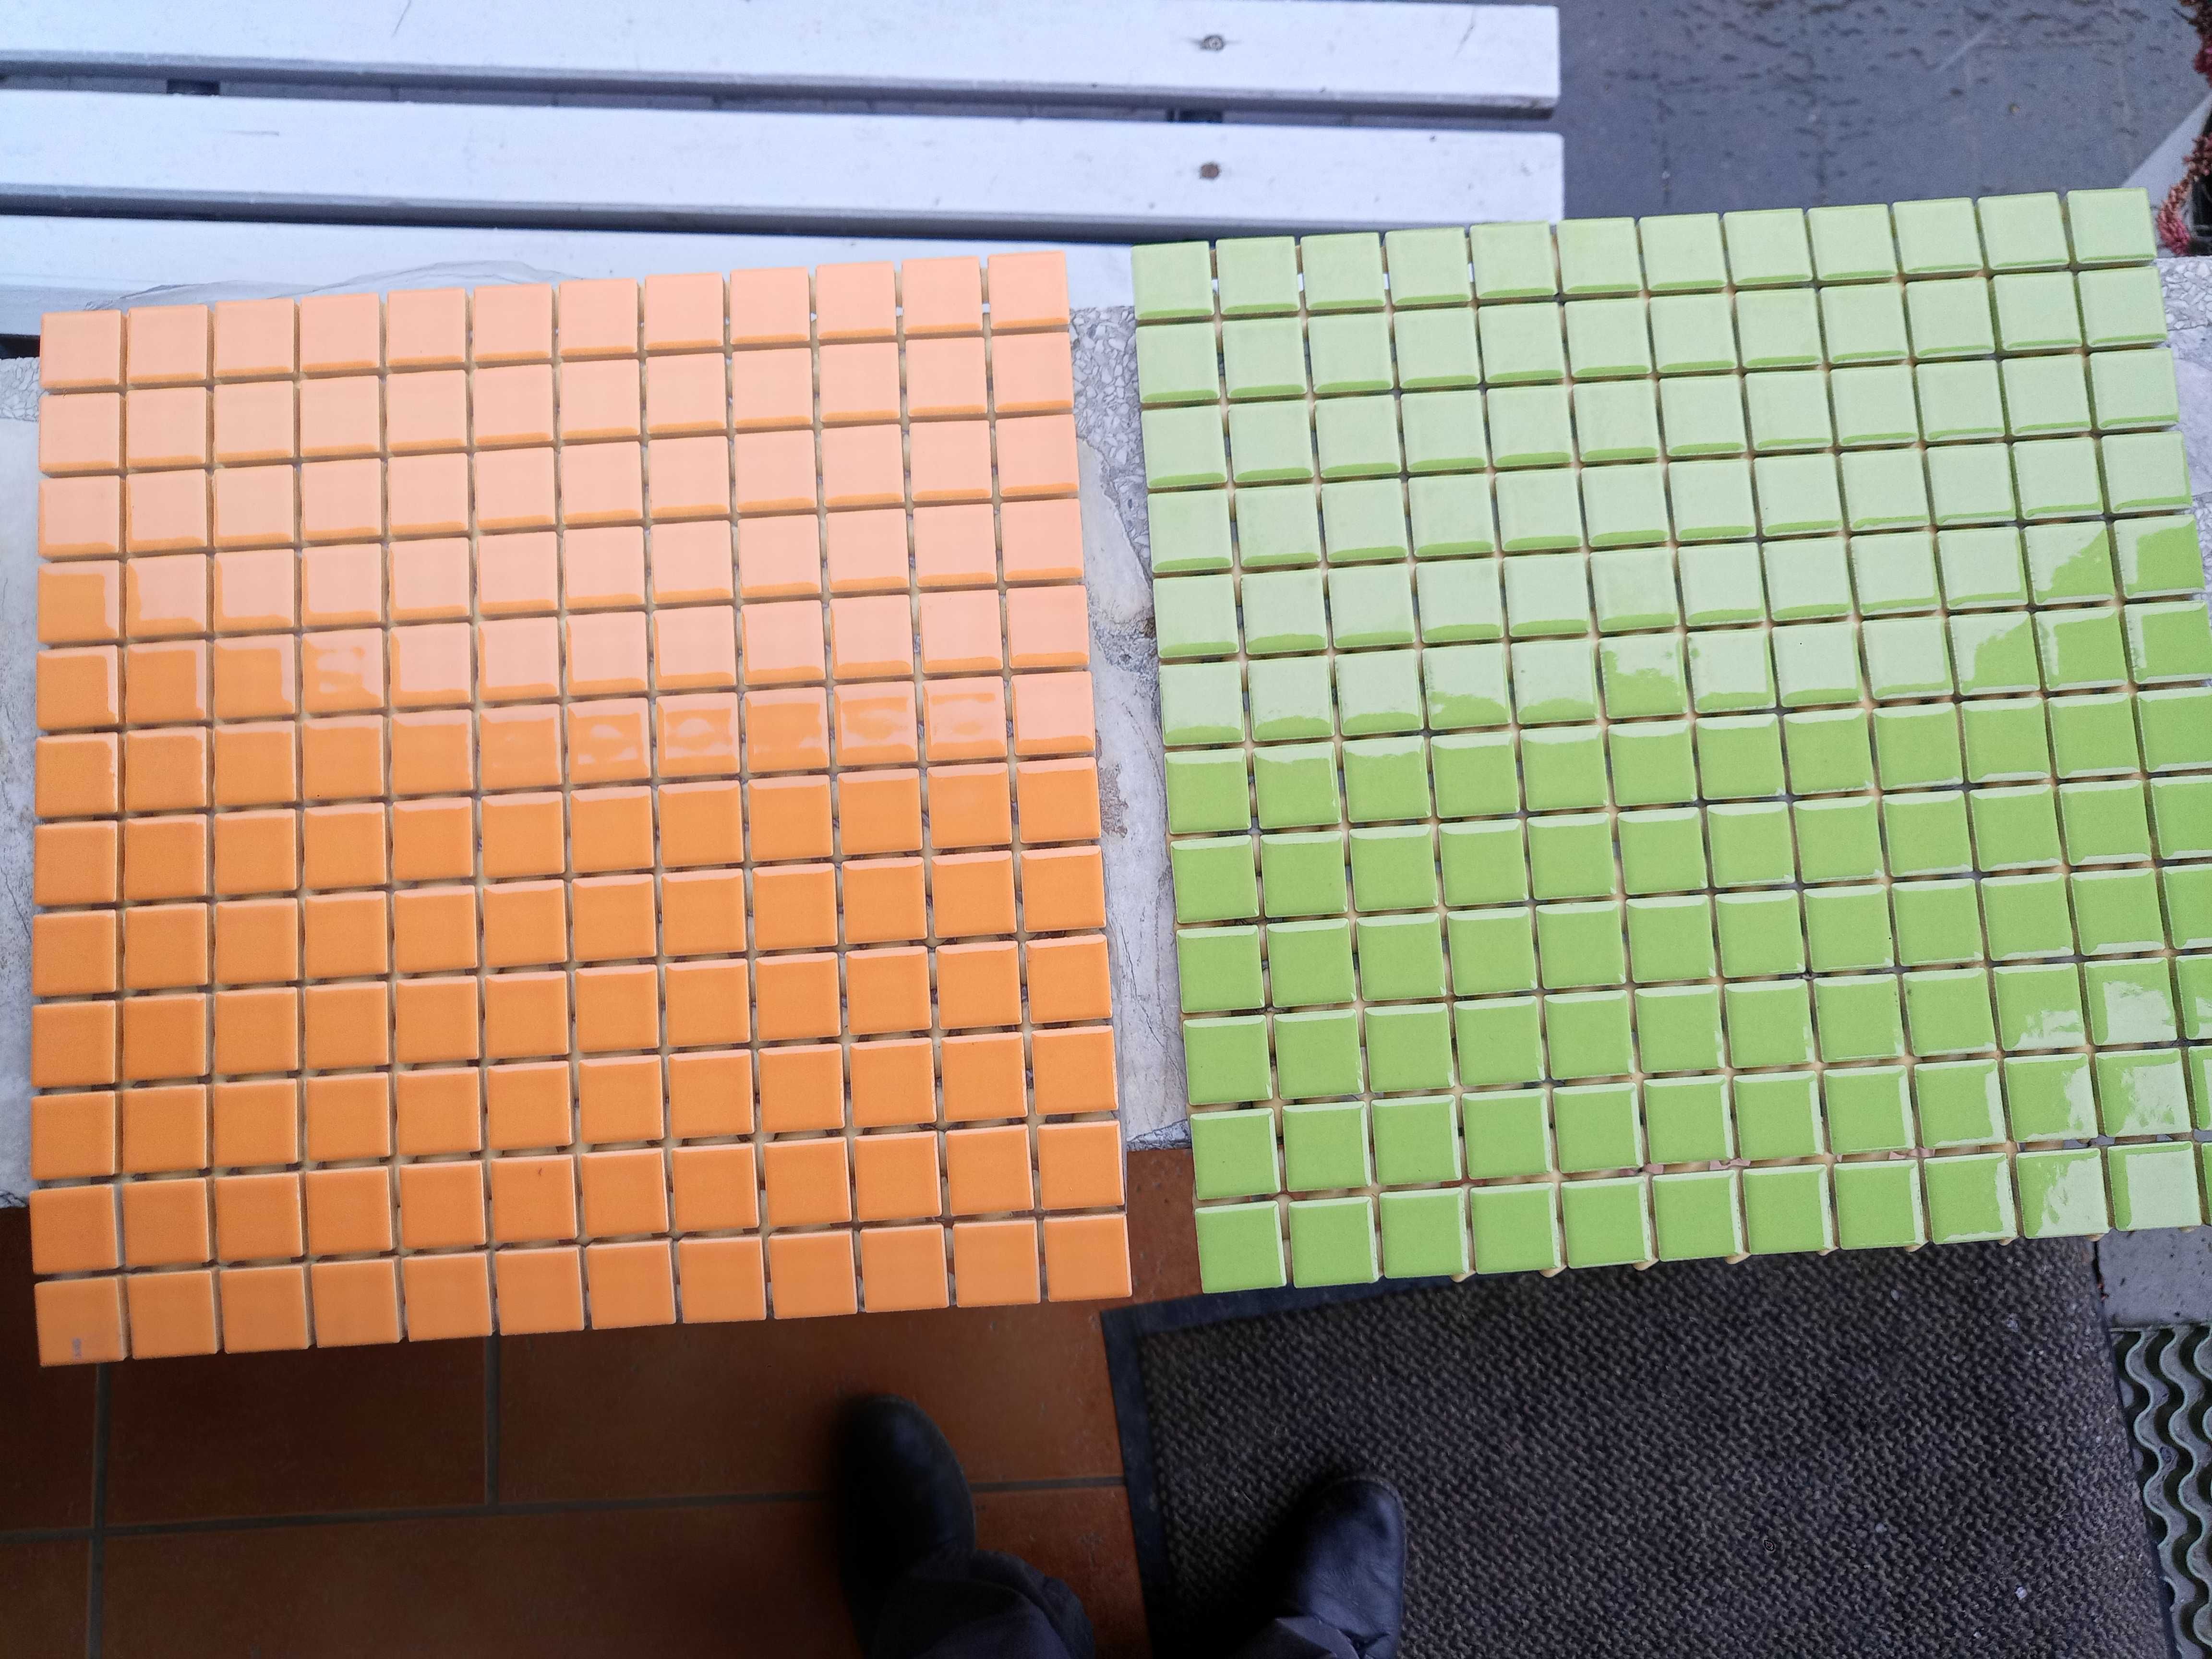 Płytki mozaika orange, zielona.